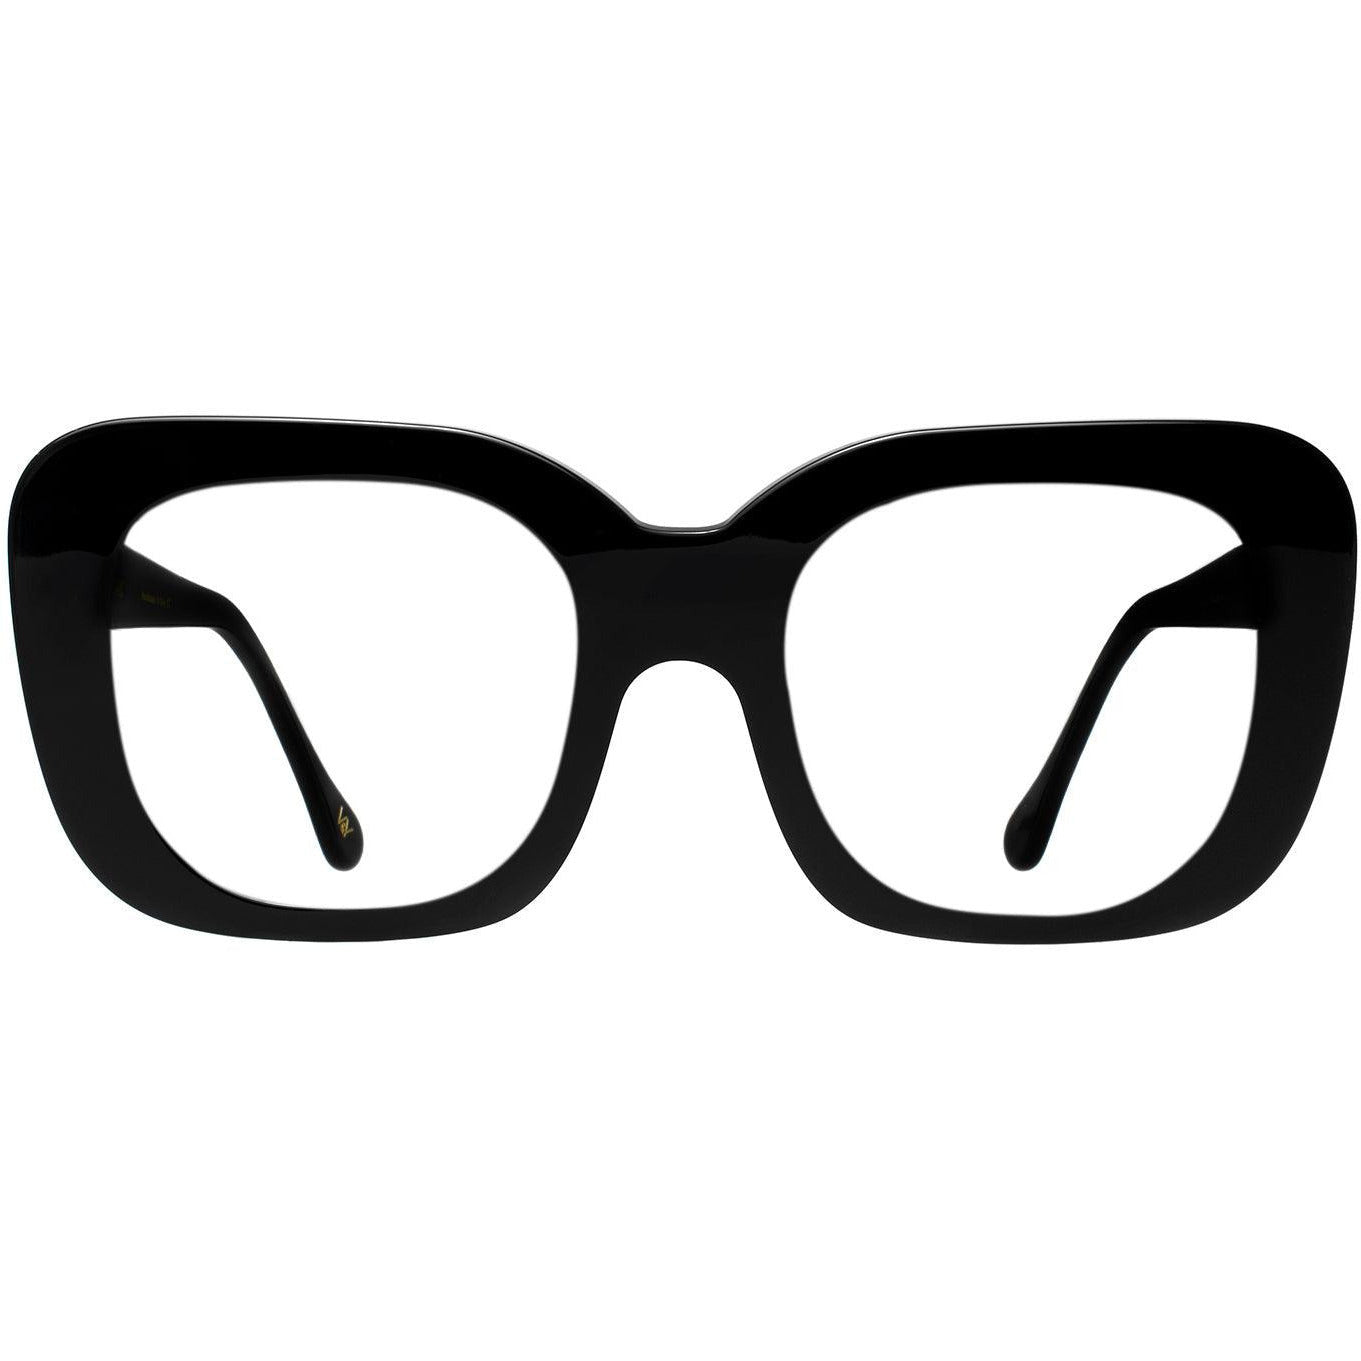 Flight of Fancy Round Frame in Hunter Green Eyeglasses High End Designer Prescription Glasses Blue Light - Vint & York